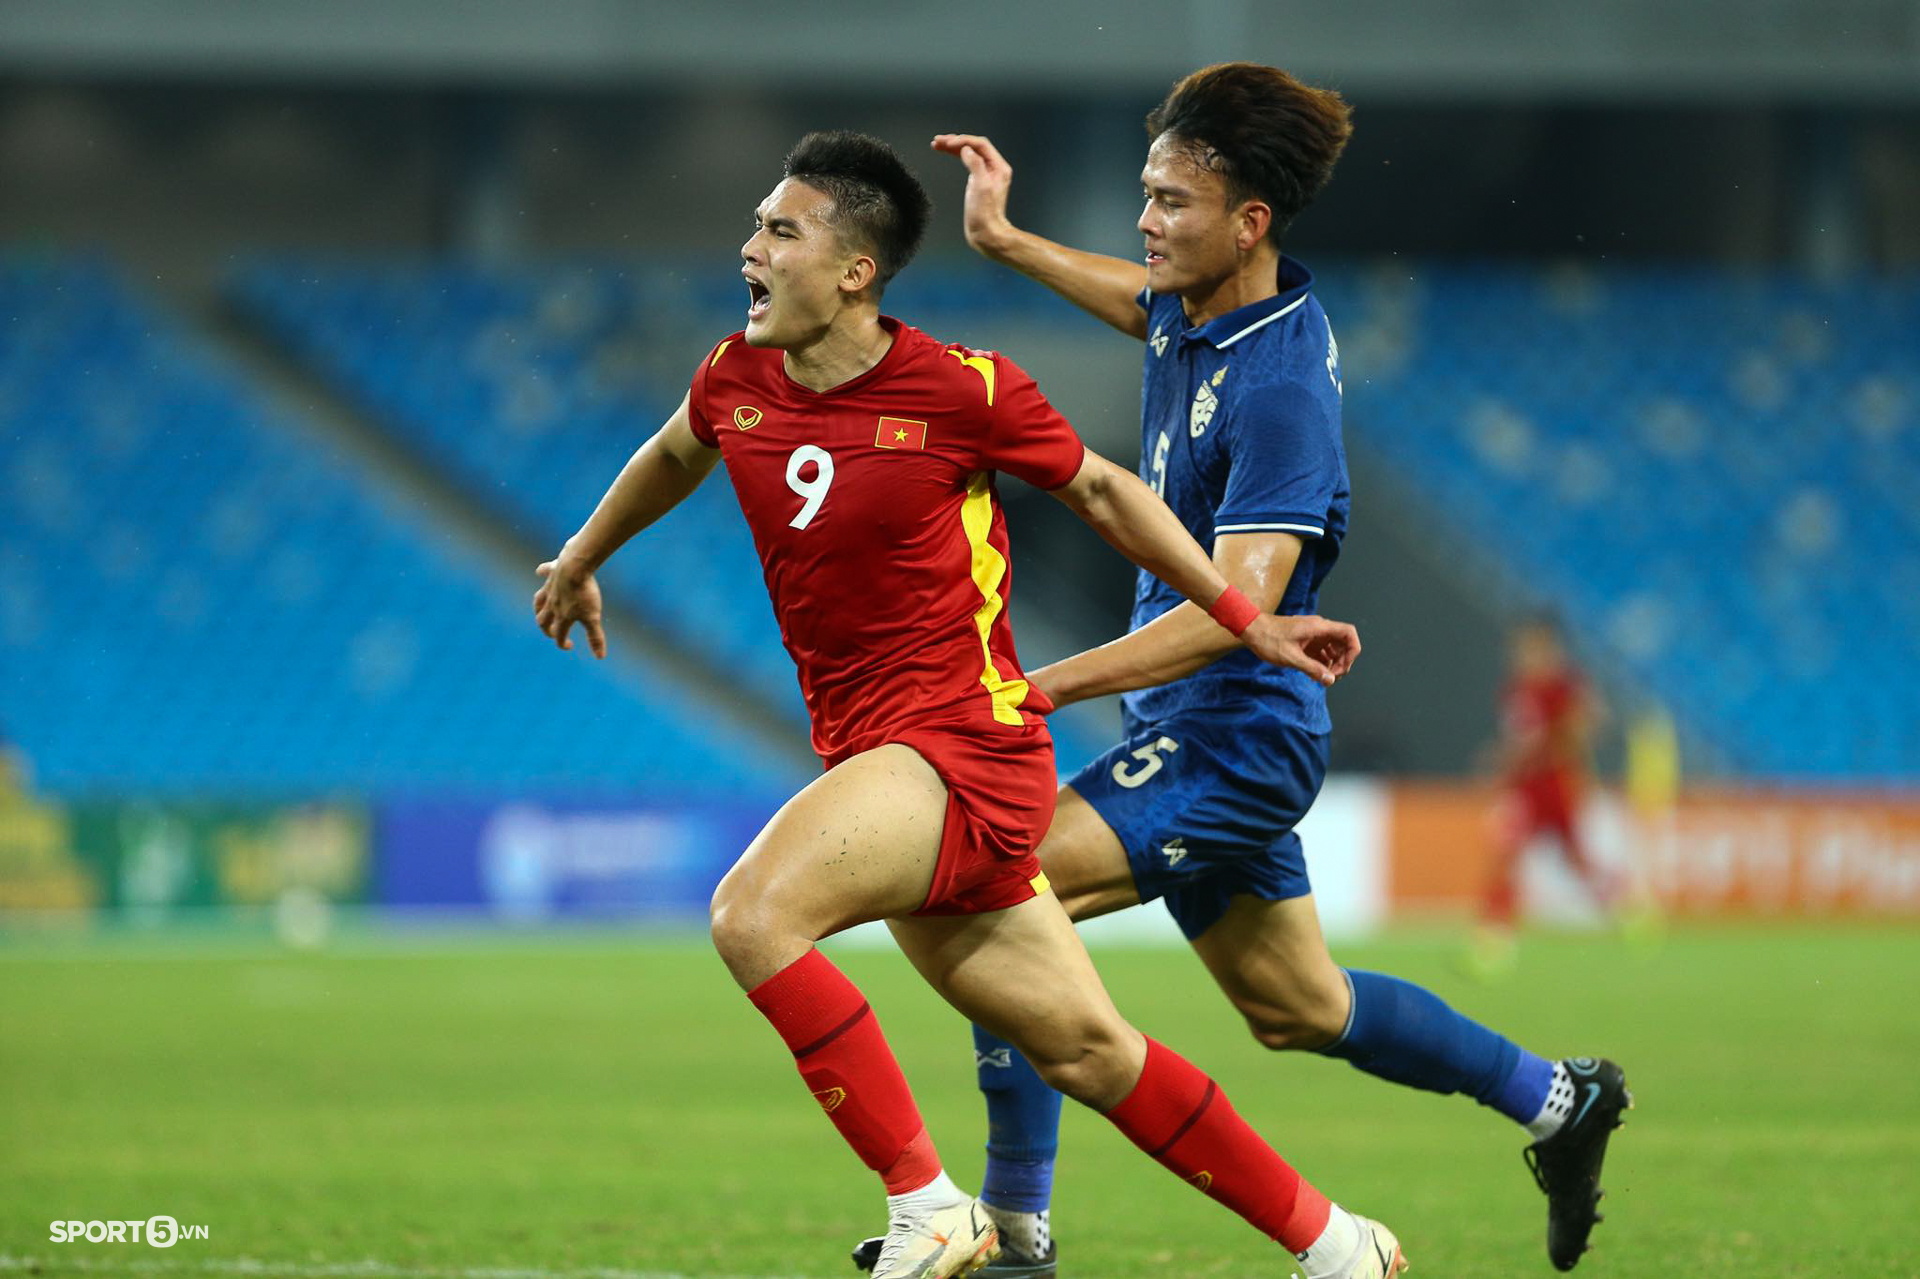 Trung phong U23 Việt Nam mặc áo &quot;lỗi&quot; khuấy đảo hàng thủ U23 Thái Lan - Ảnh 2.